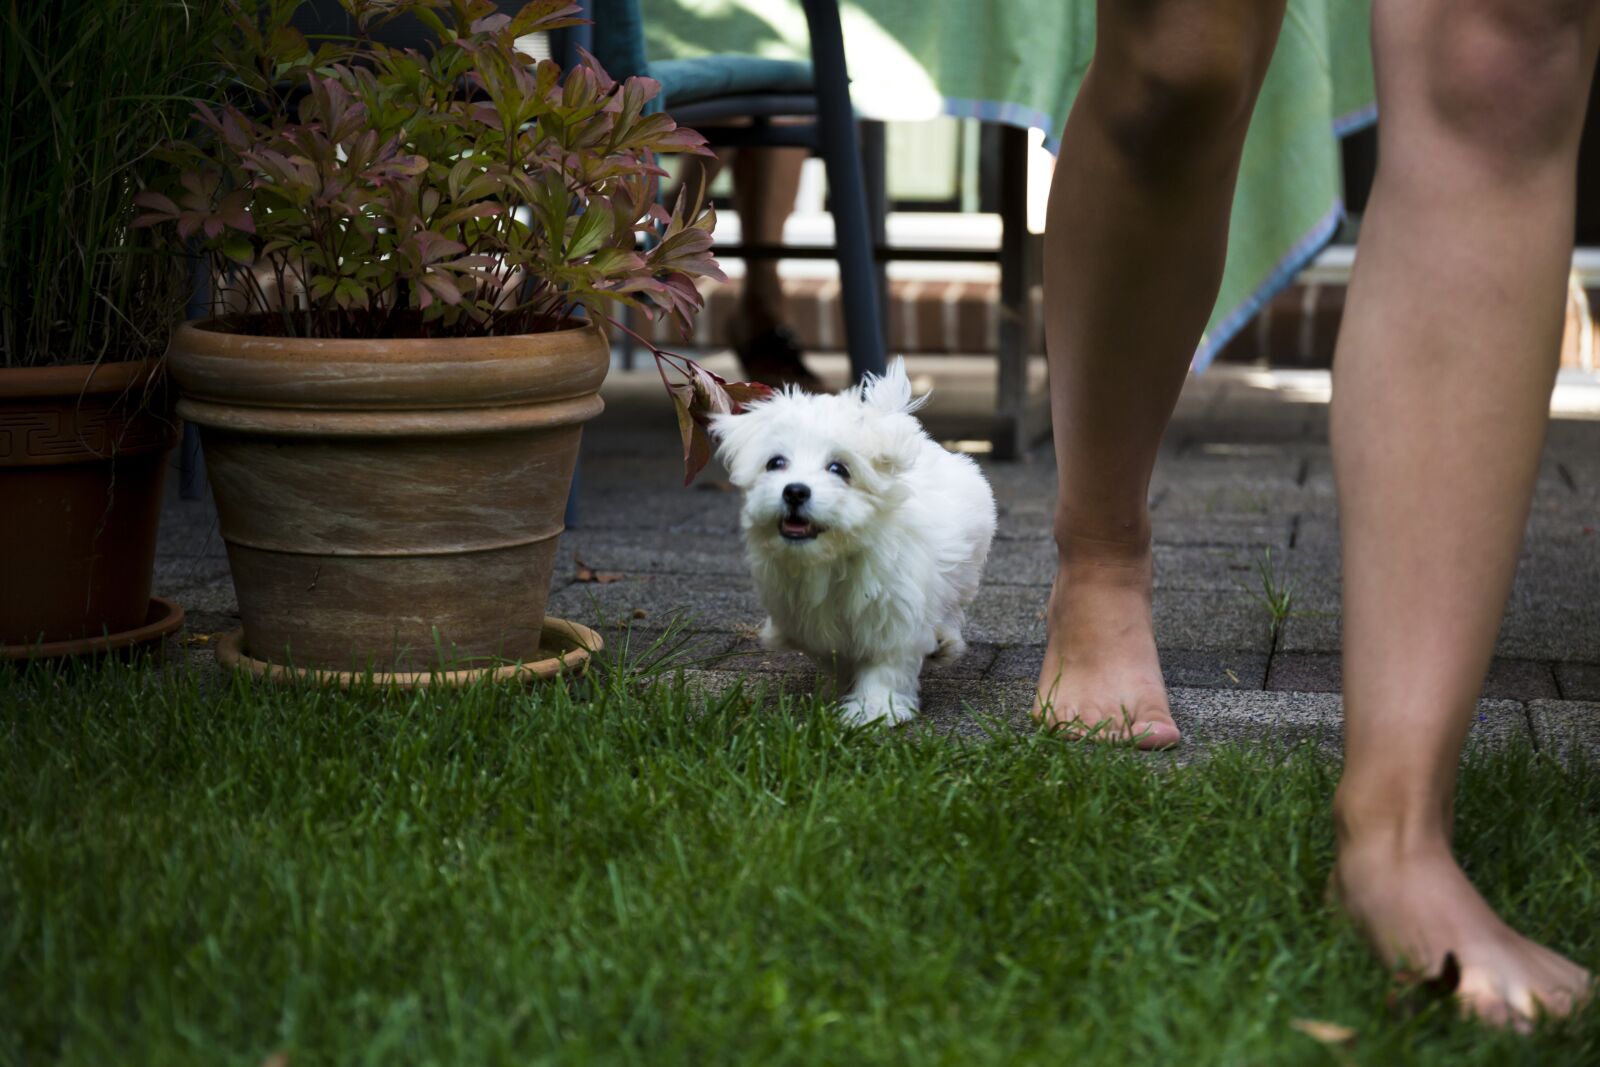 Canon EOS 5D Mark III sample photo. Dog, maltese, garden photography